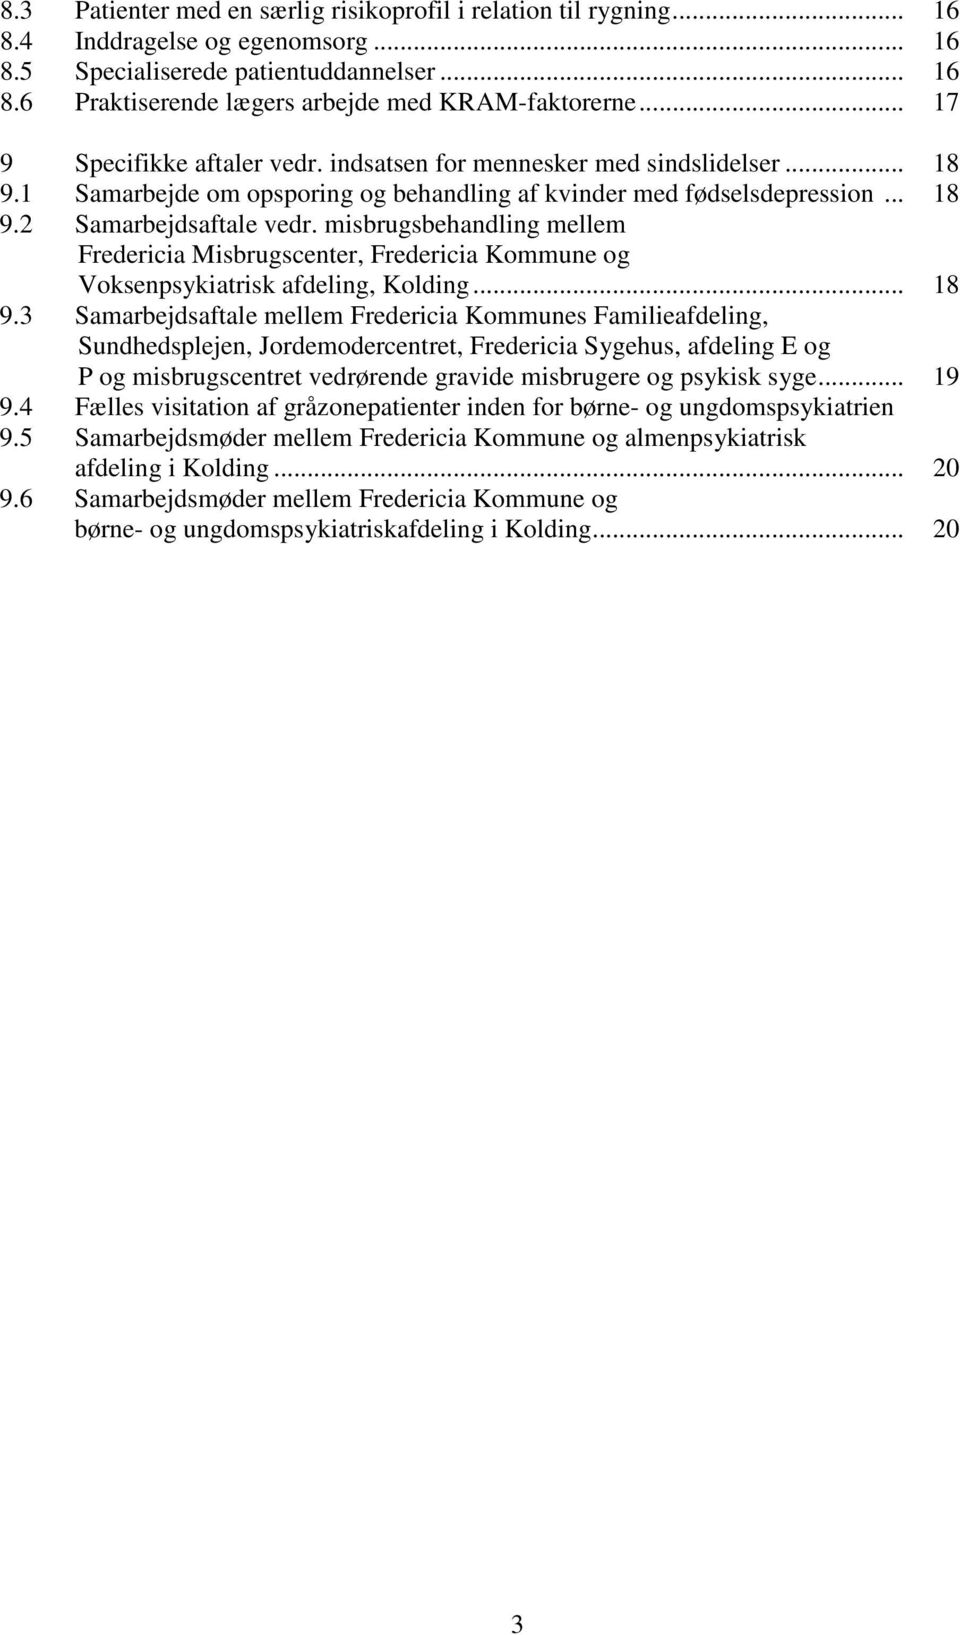 misbrugsbehandling mellem Fredericia Misbrugscenter, Fredericia Kommune og Voksenpsykiatrisk afdeling, Kolding... 18 9.